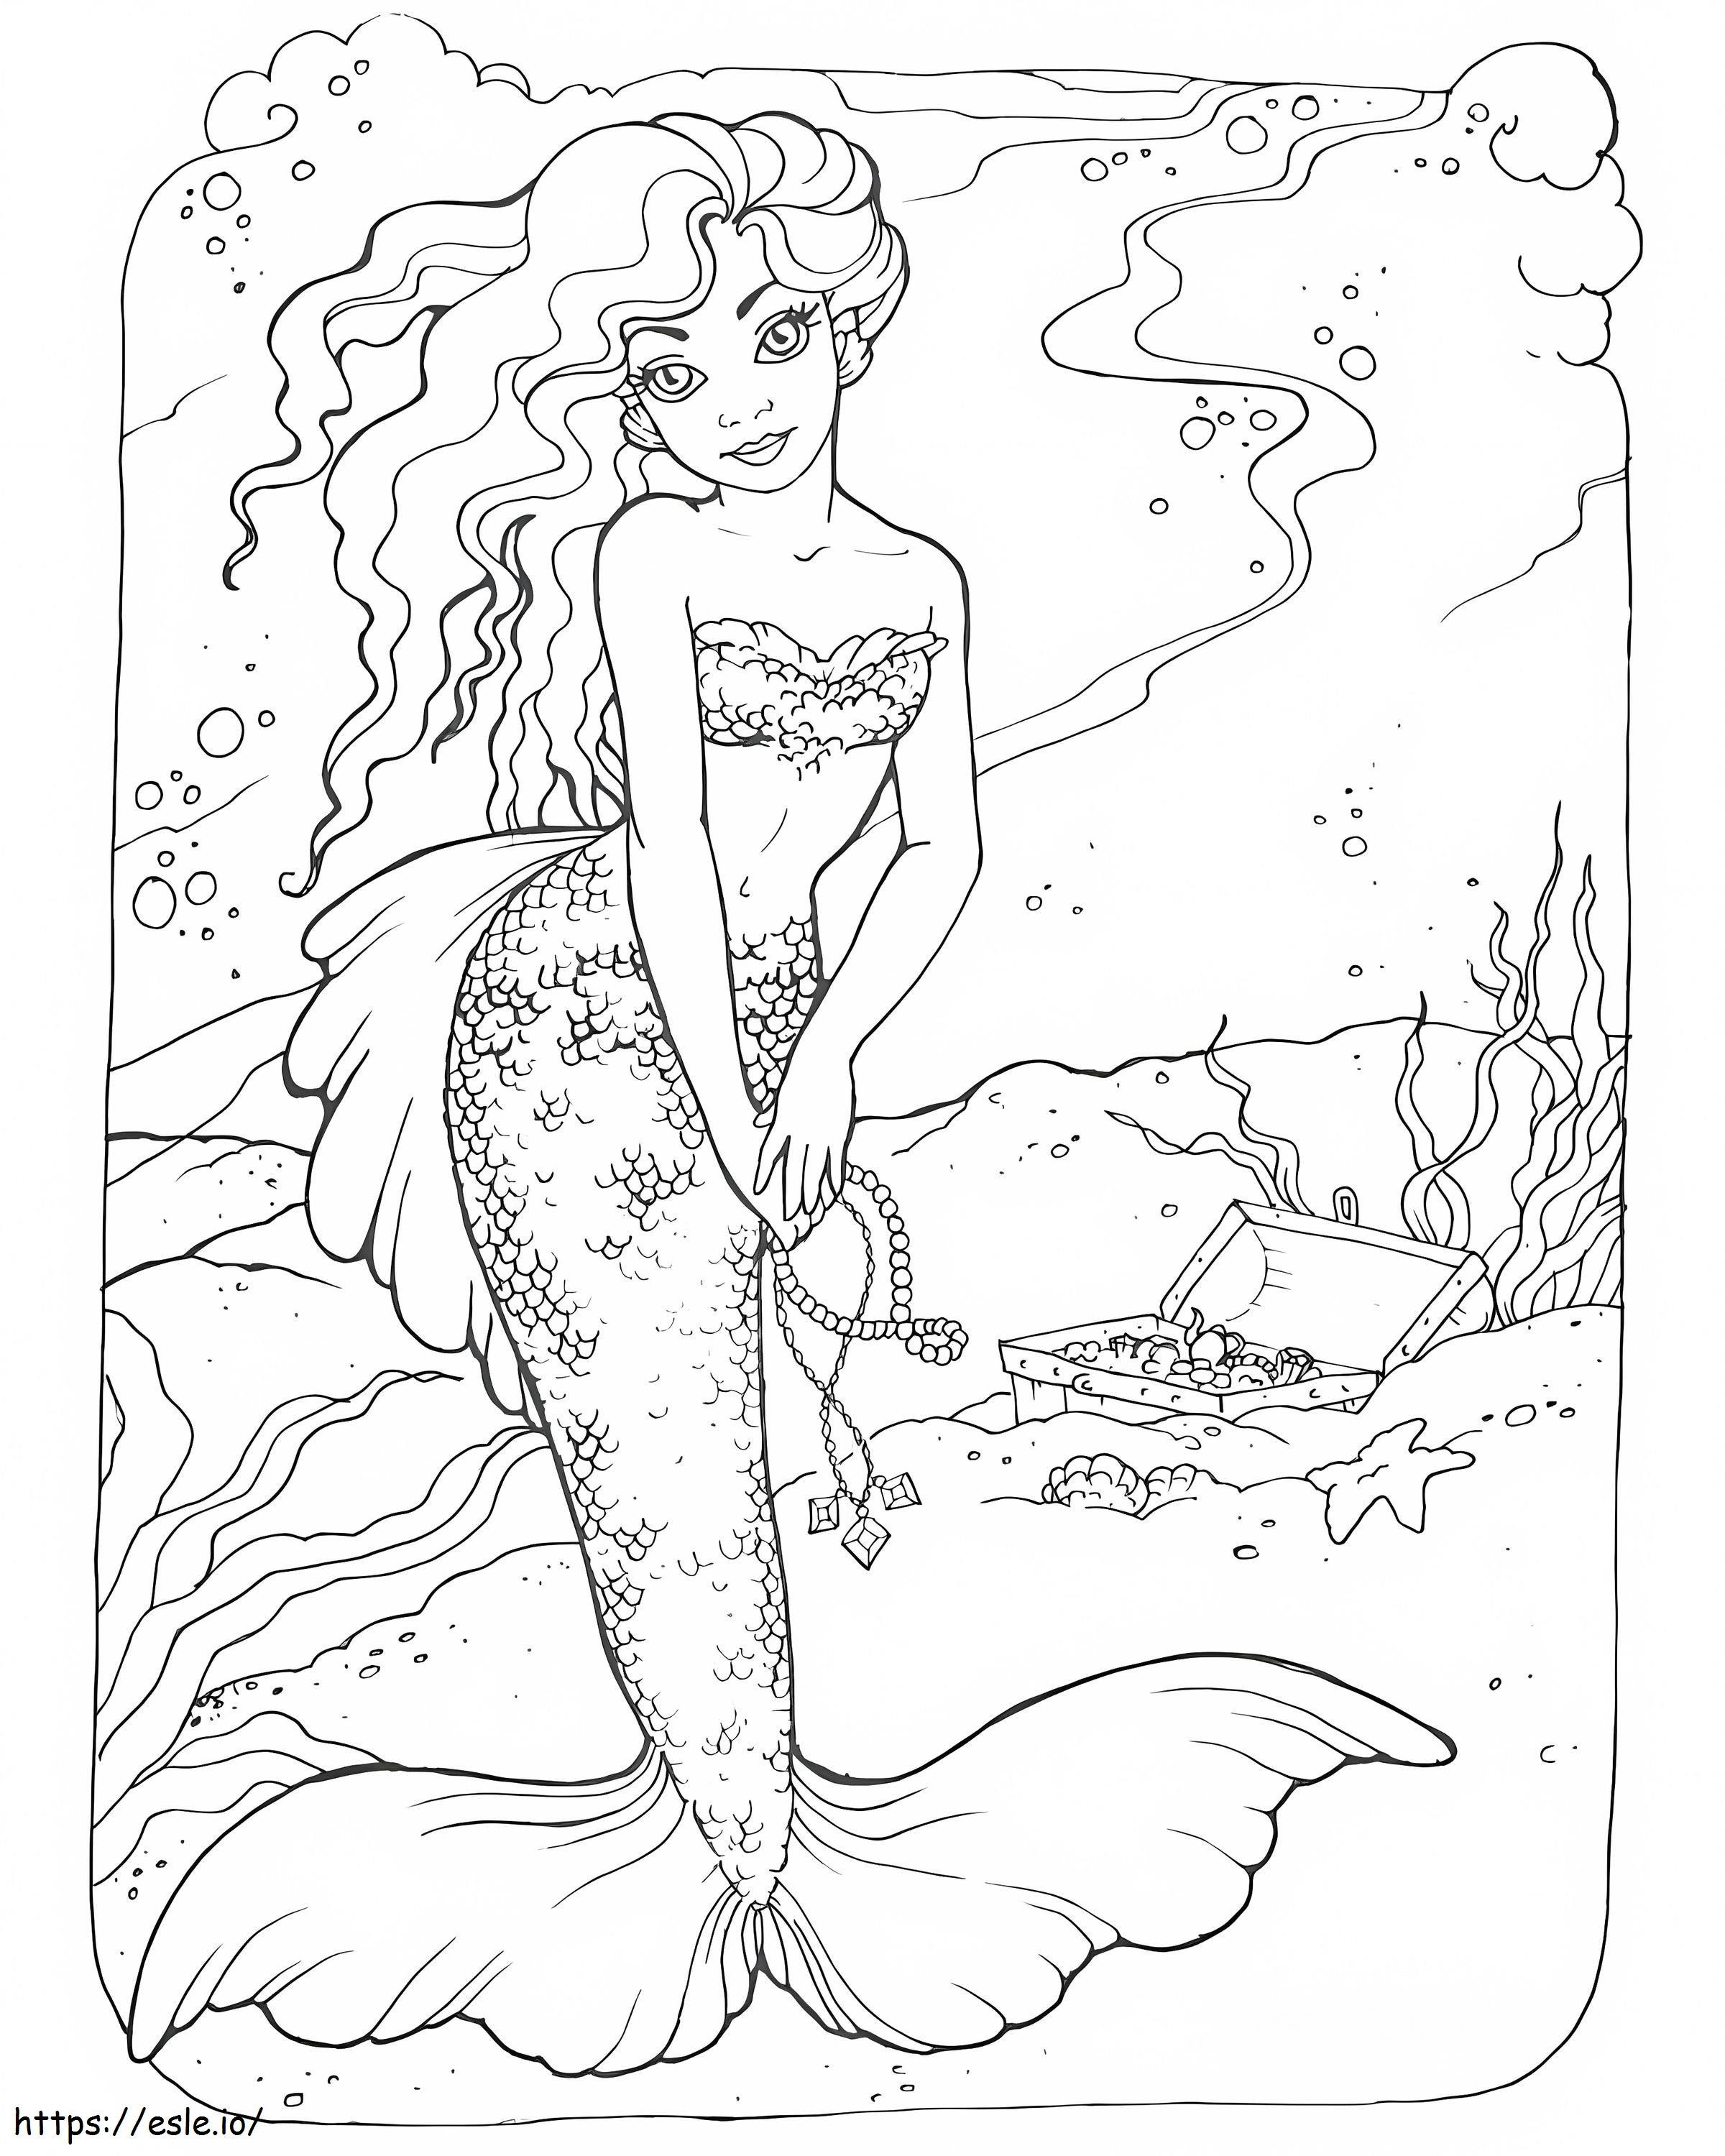 Mermaid Under The Ocean coloring page